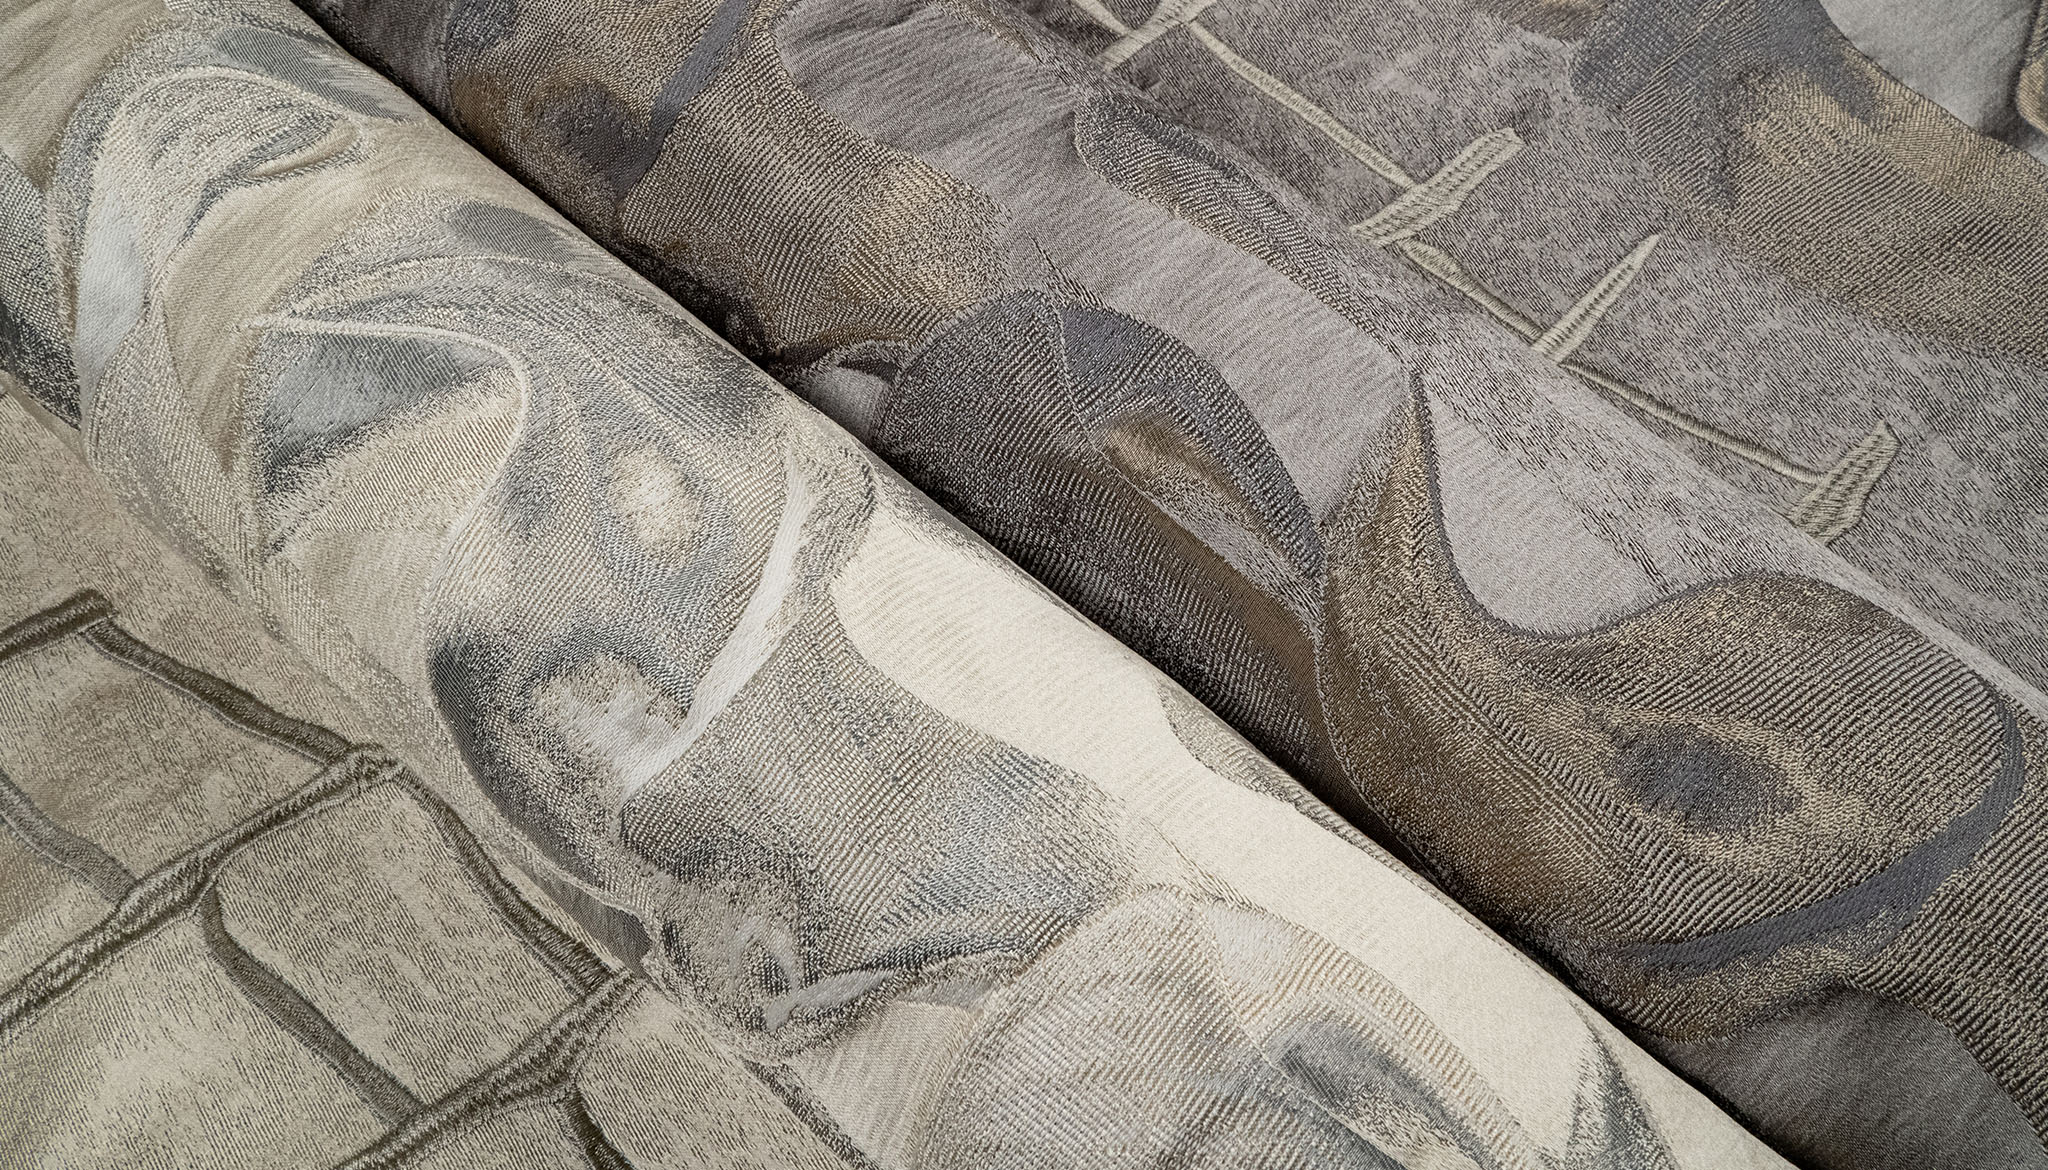 Armani/Casa Fabric Collection by Rubelli